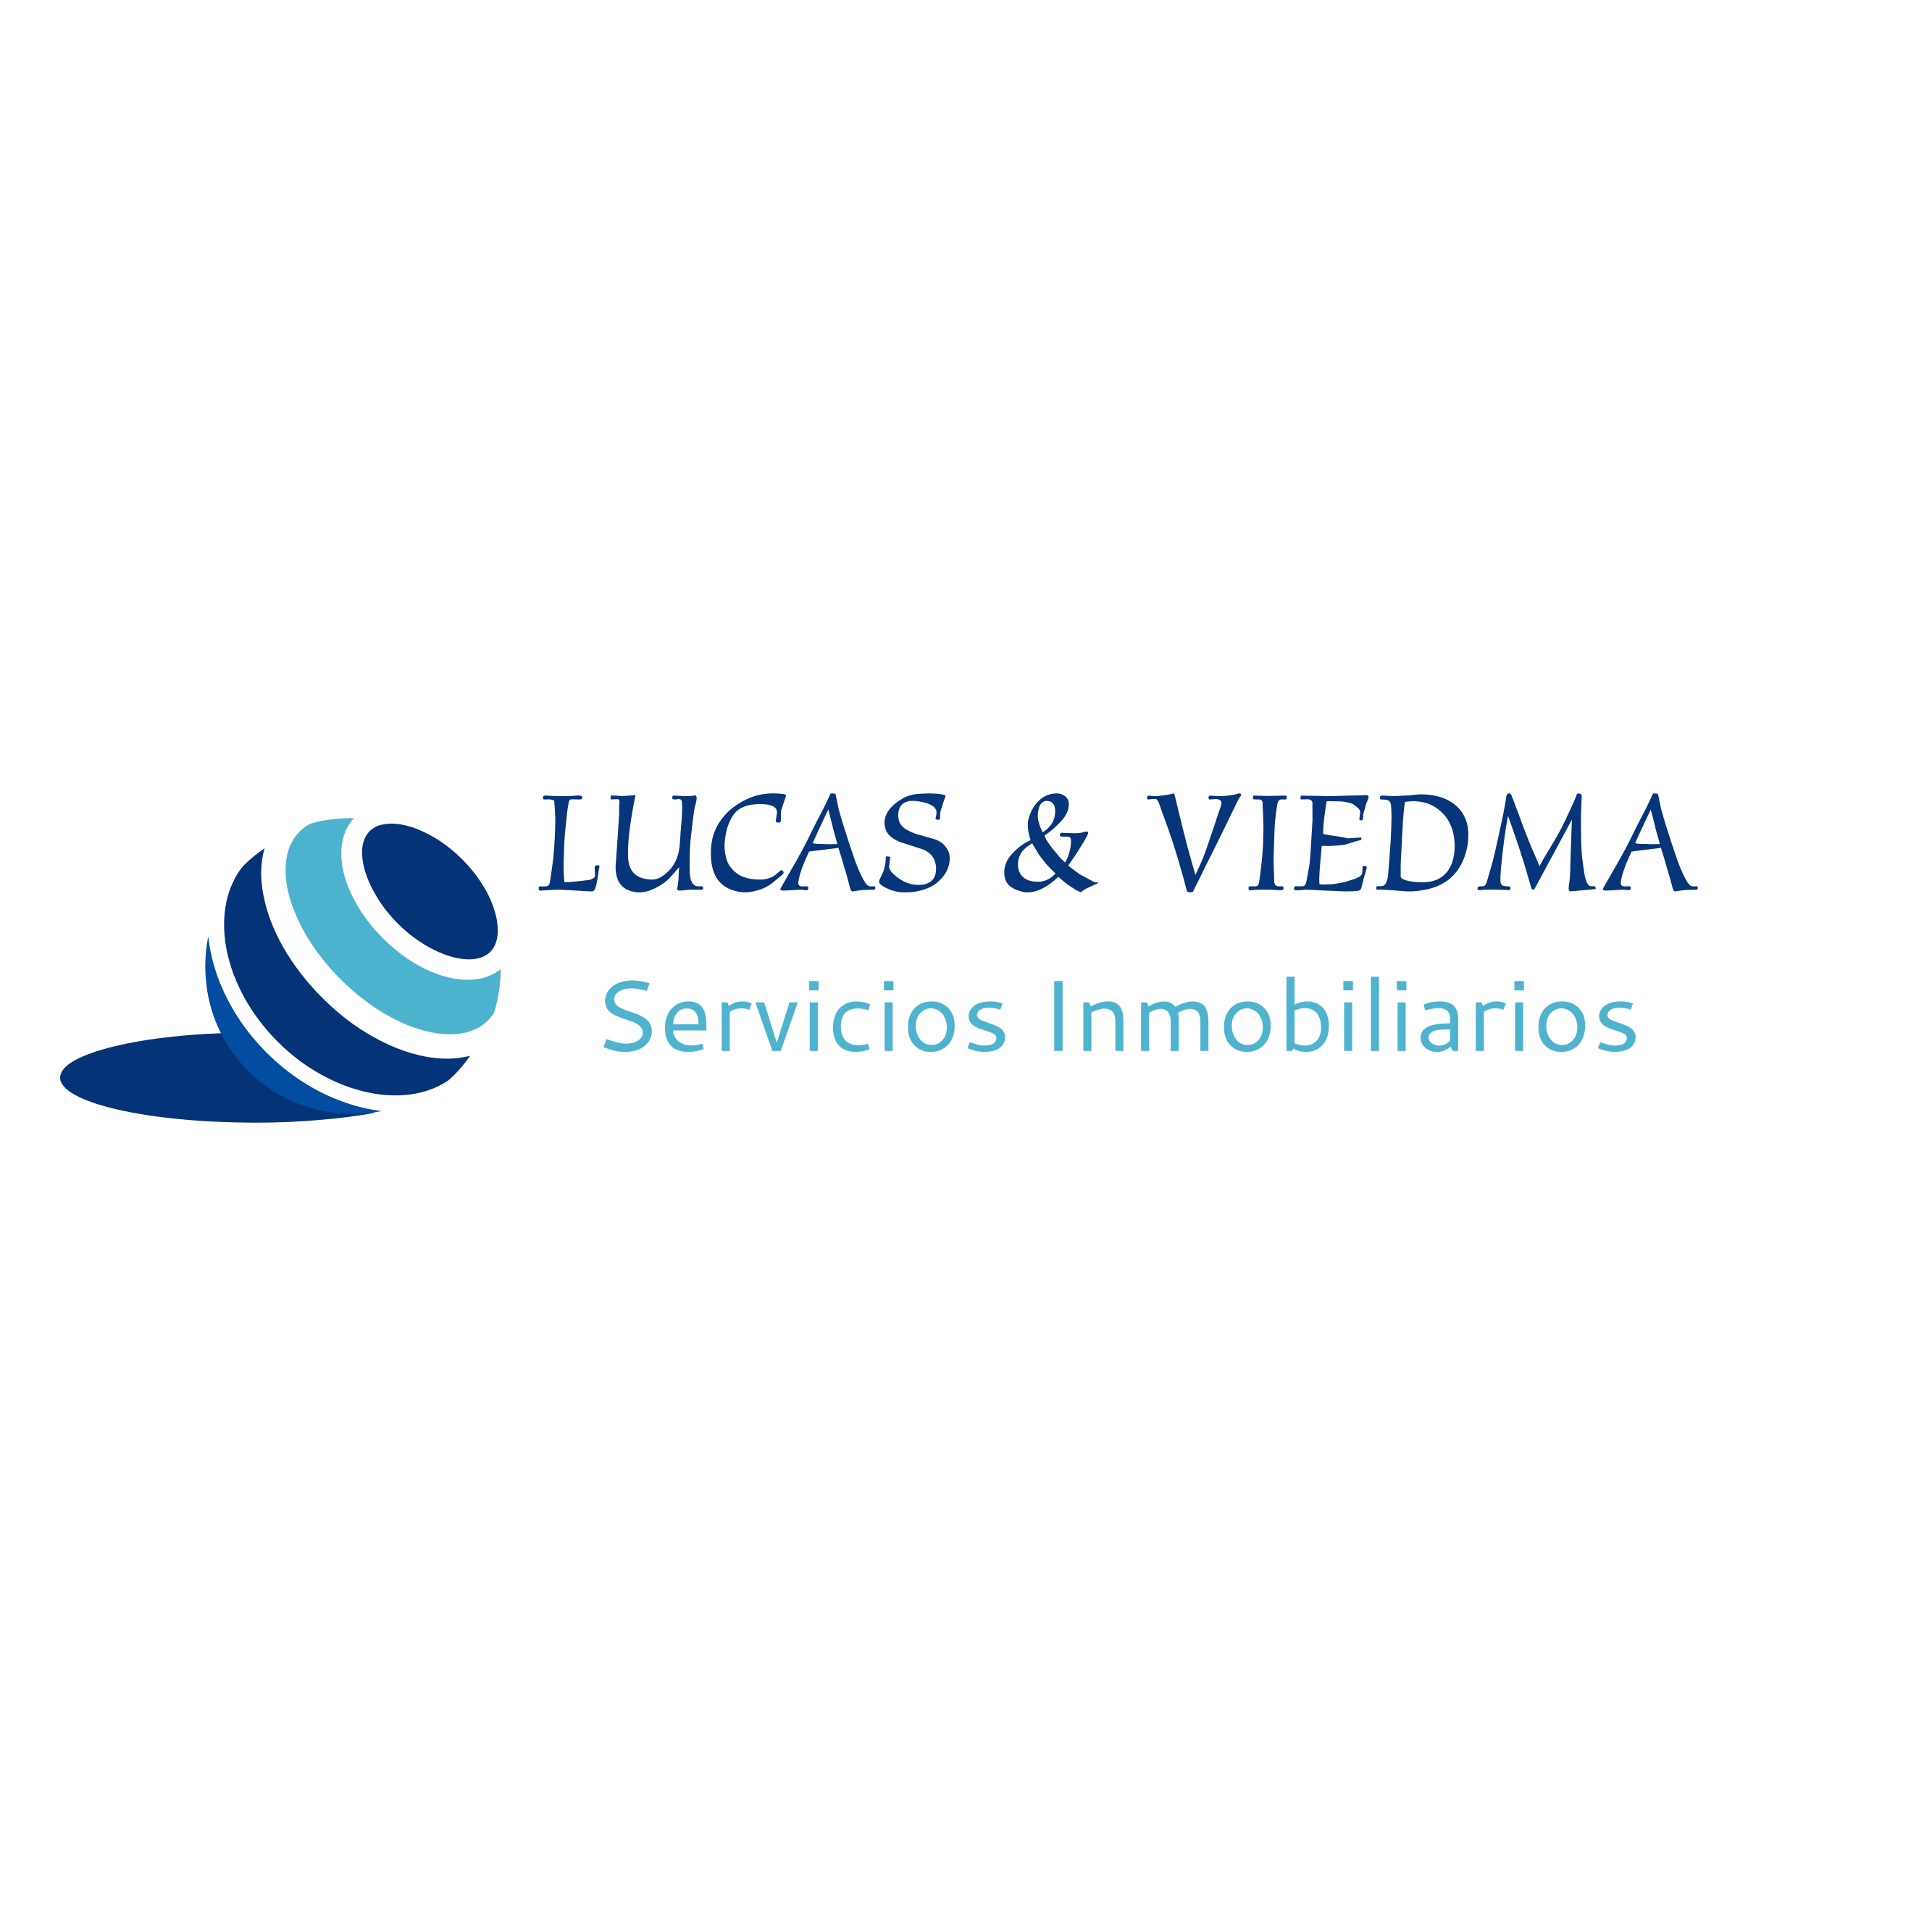 Lucas & Viedma Servicios Inmobiliarios Barbate